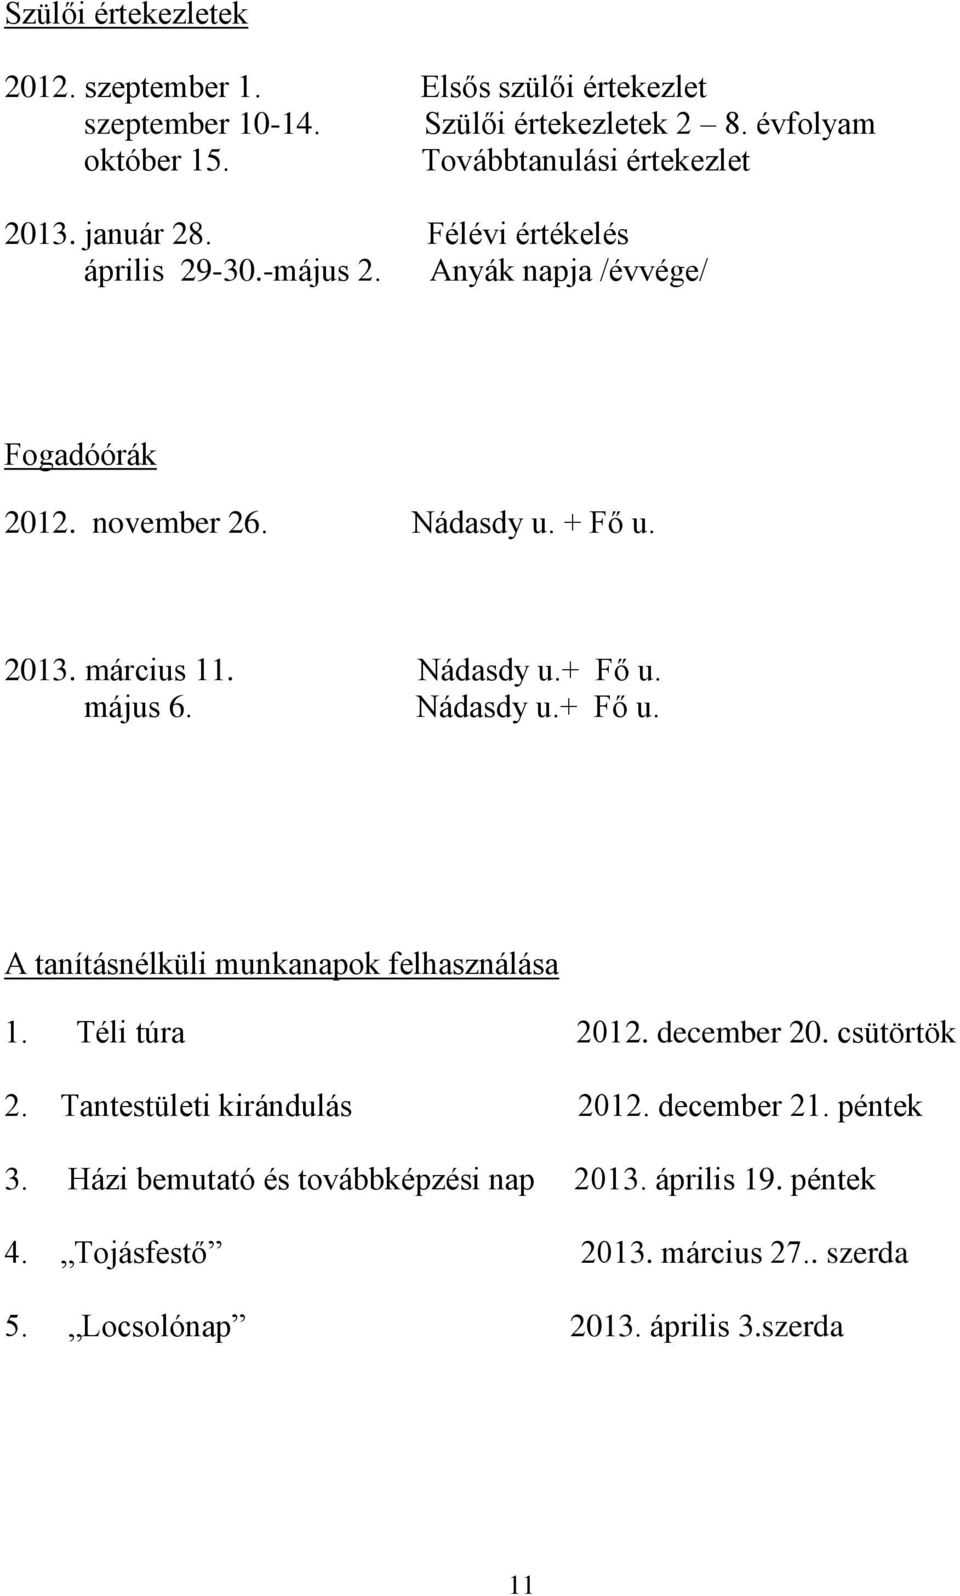 2013. március 11. Nádasdy u.+ Fő u. május 6. Nádasdy u.+ Fő u. A tanításnélküli munkanapok felhasználása 1. Téli túra 2012. december 20. csütörtök 2.